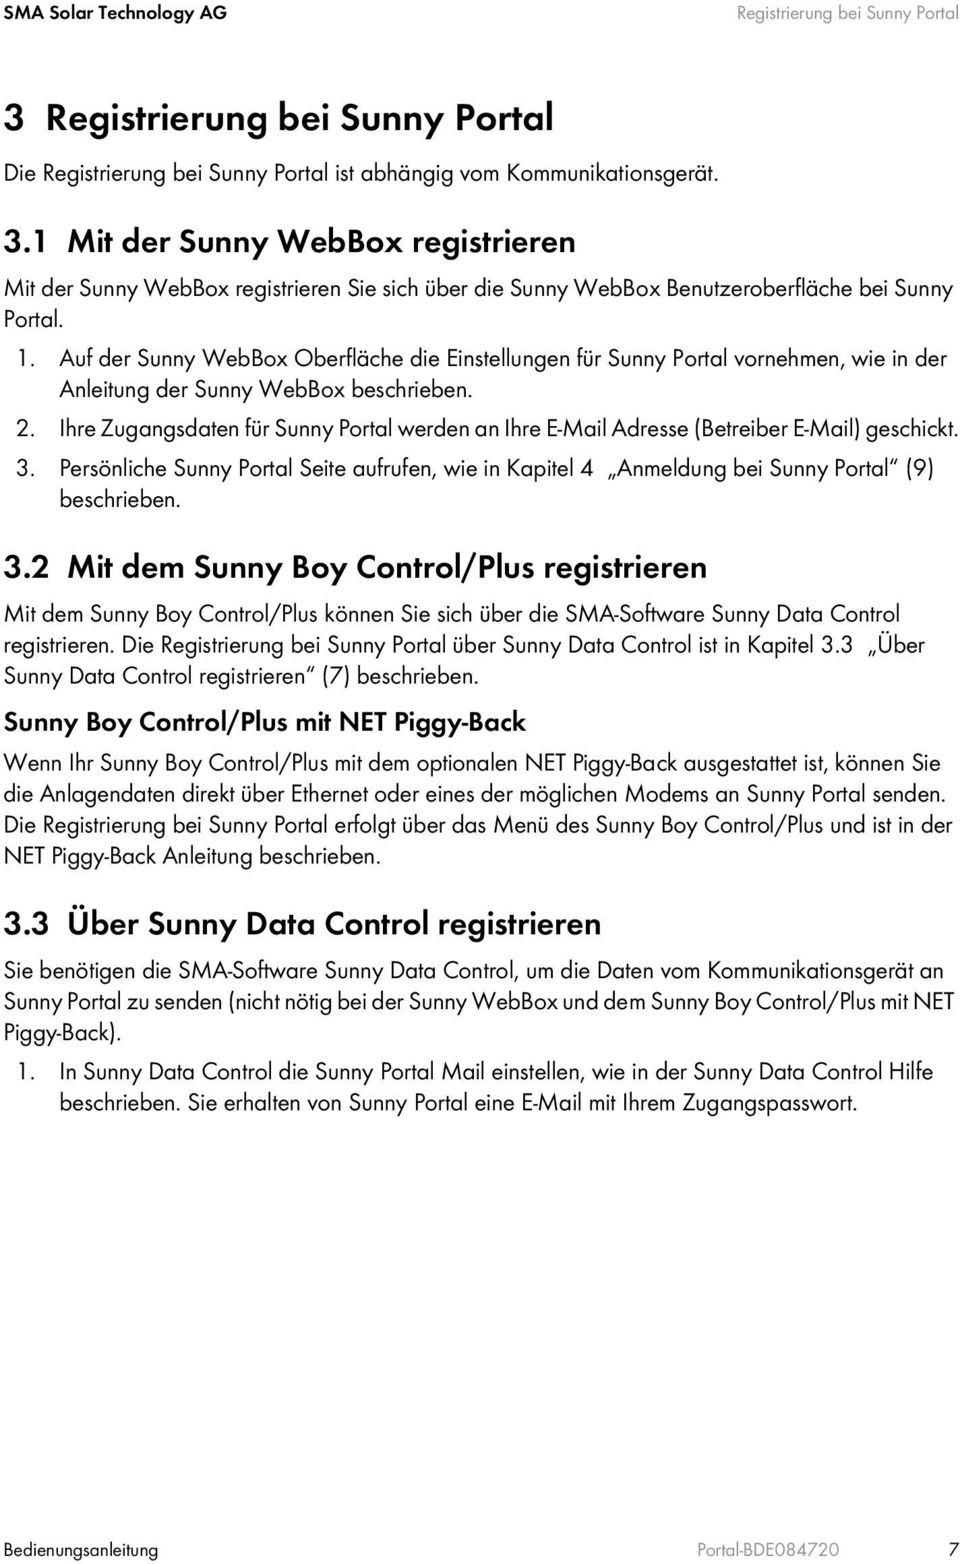 Ihre Zugangsdaten für Sunny Portal werden an Ihre E-Mail Adresse (Betreiber E-Mail) geschickt. 3. Persönliche Sunny Portal Seite aufrufen, wie in Kapitel 4 Anmeldung bei Sunny Portal (9) beschrieben.